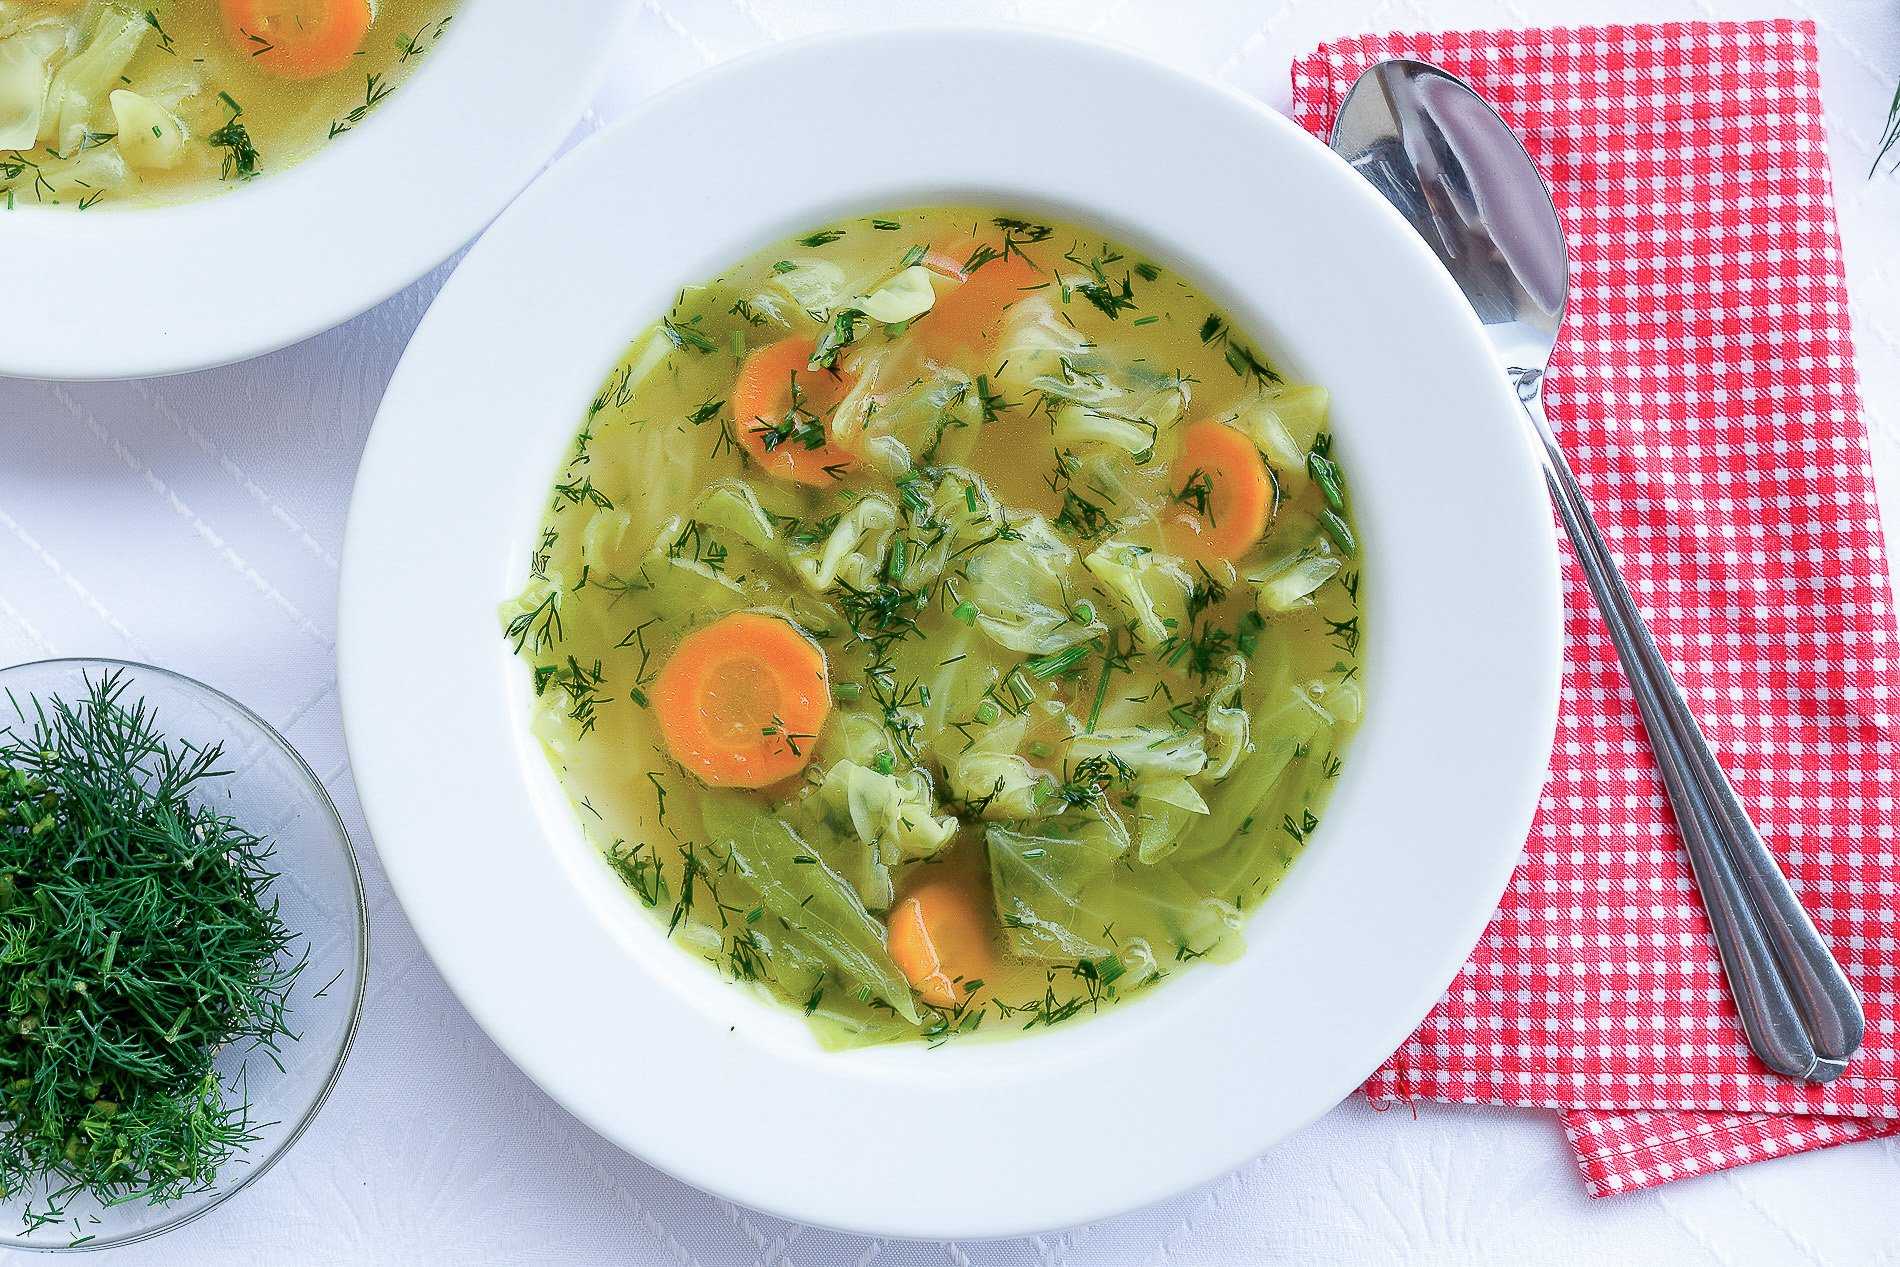 Суп пюре из капусты белокочанной и других видов: их полезность и калорийность, рецепты капустного супа из брюссельской и красной, а также советы по украшению